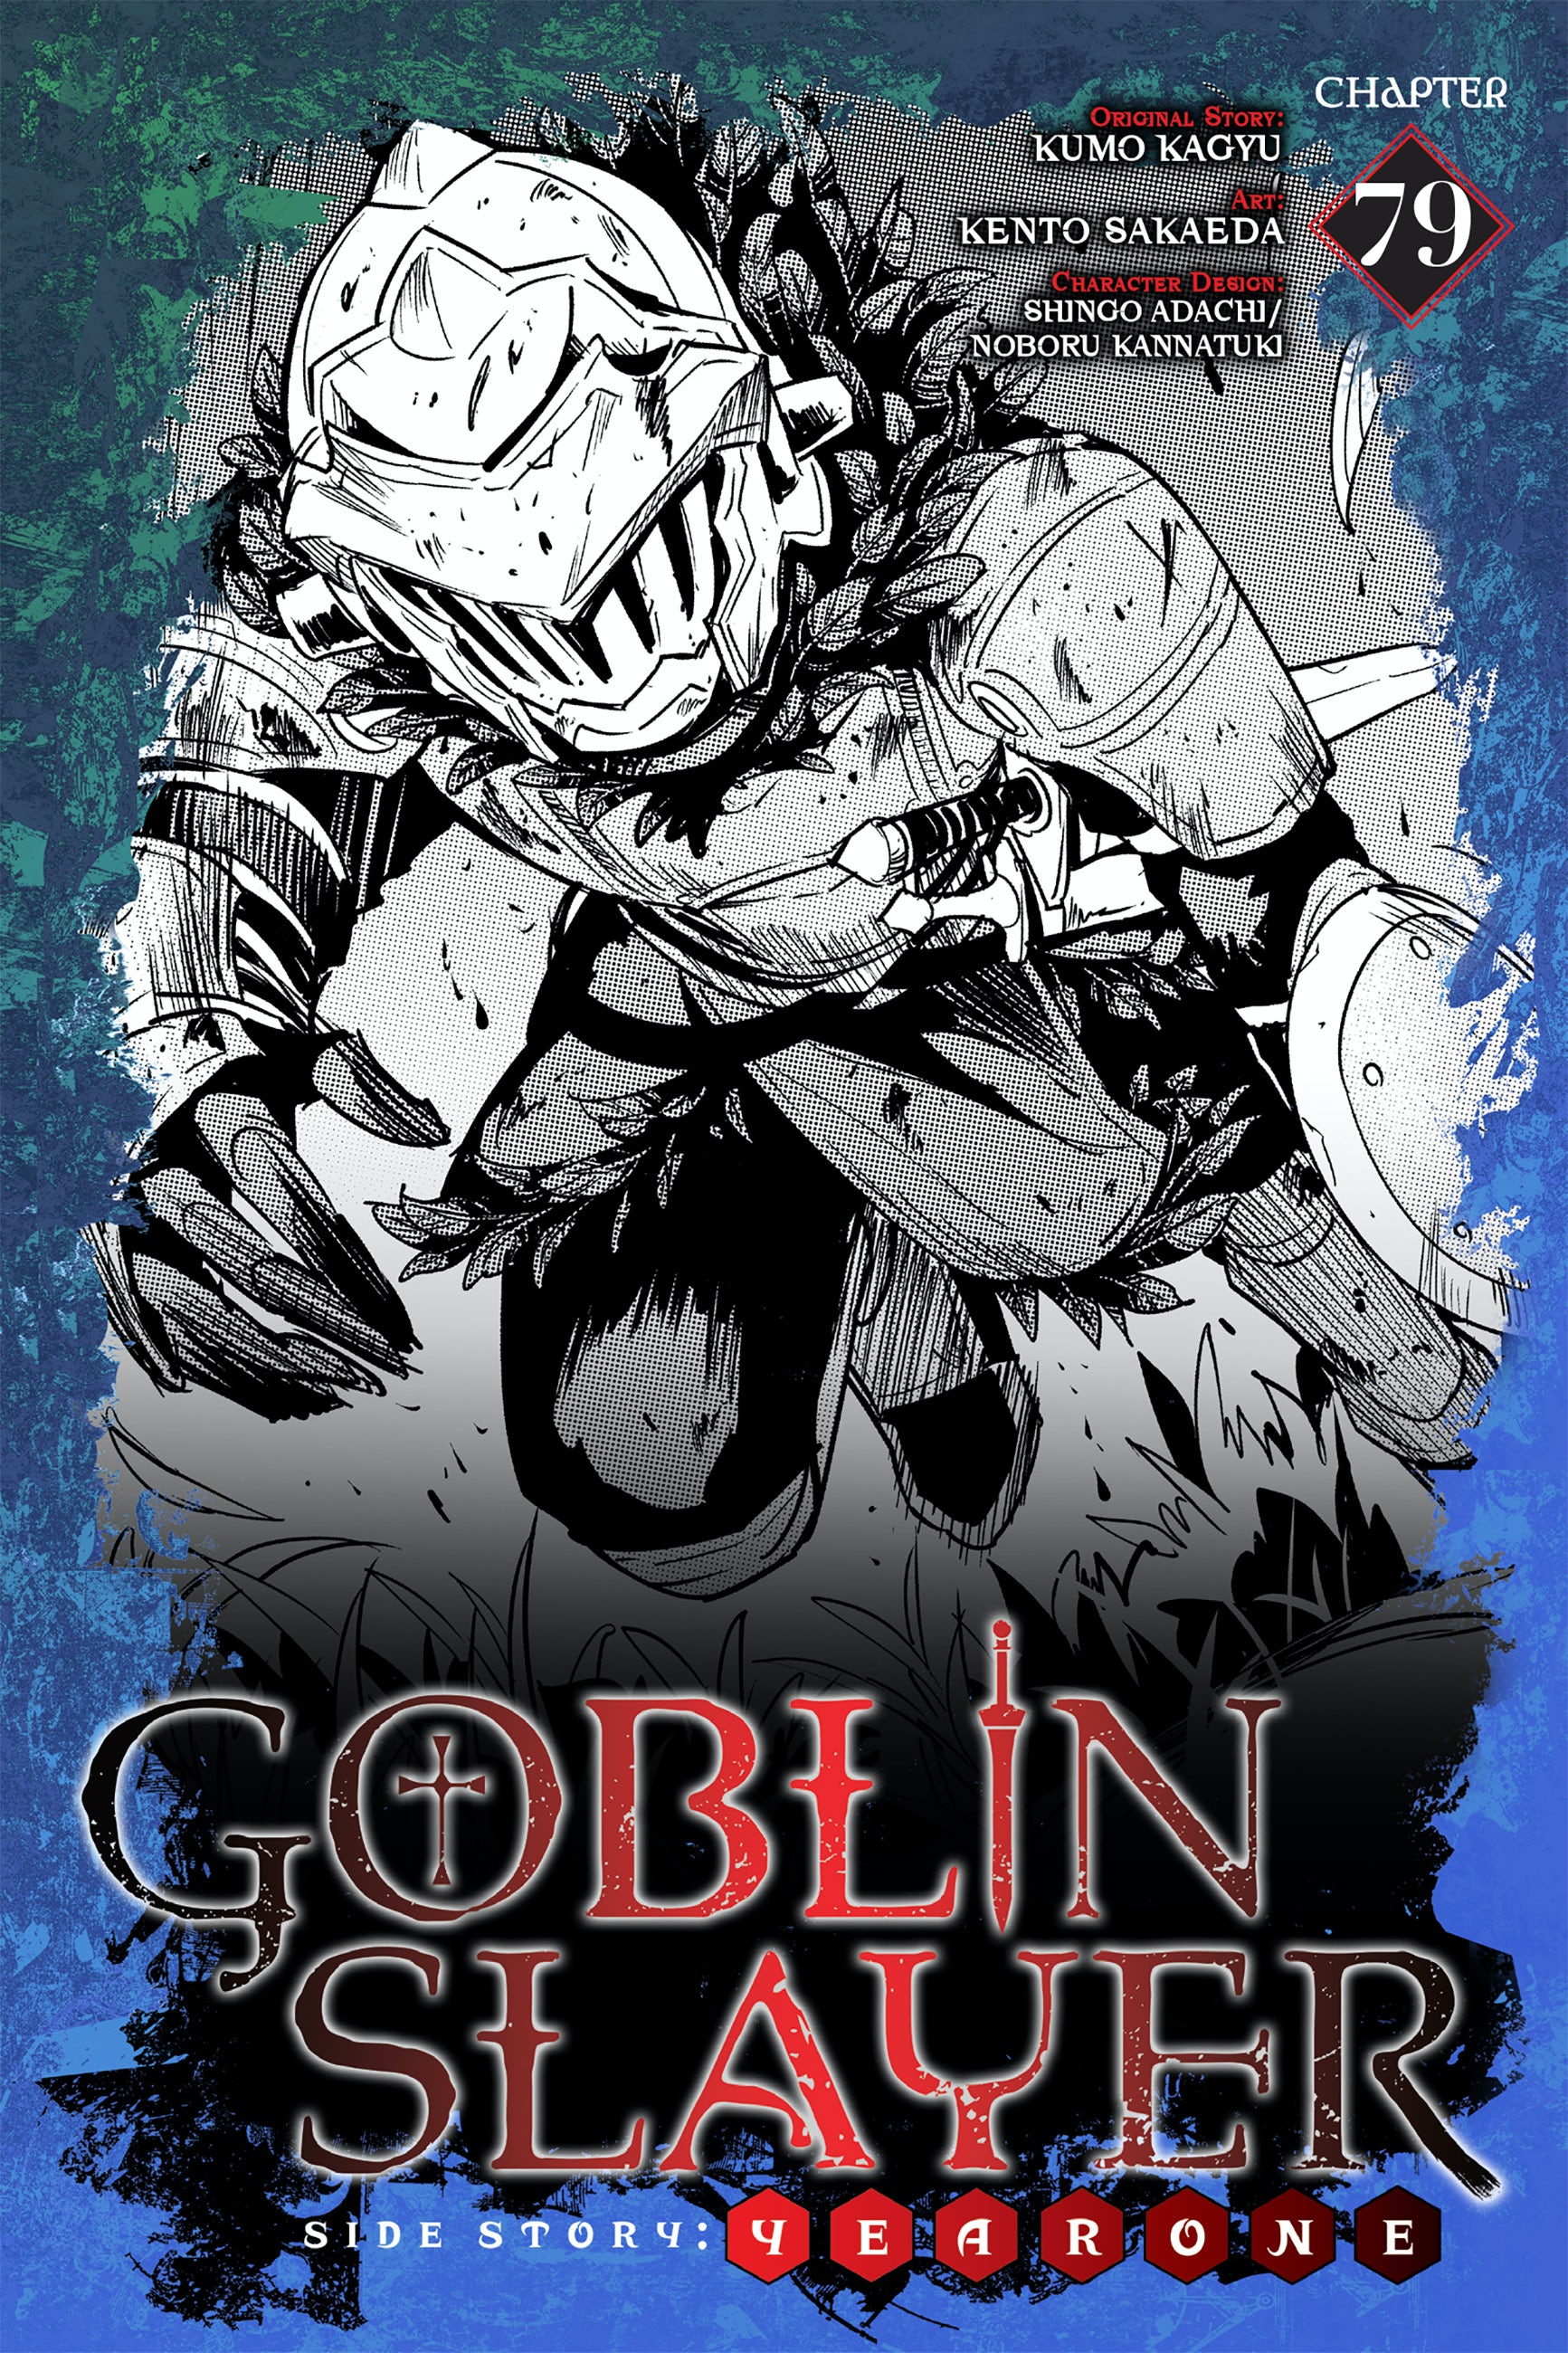 Goblin Slayer:One Years [14], Wiki